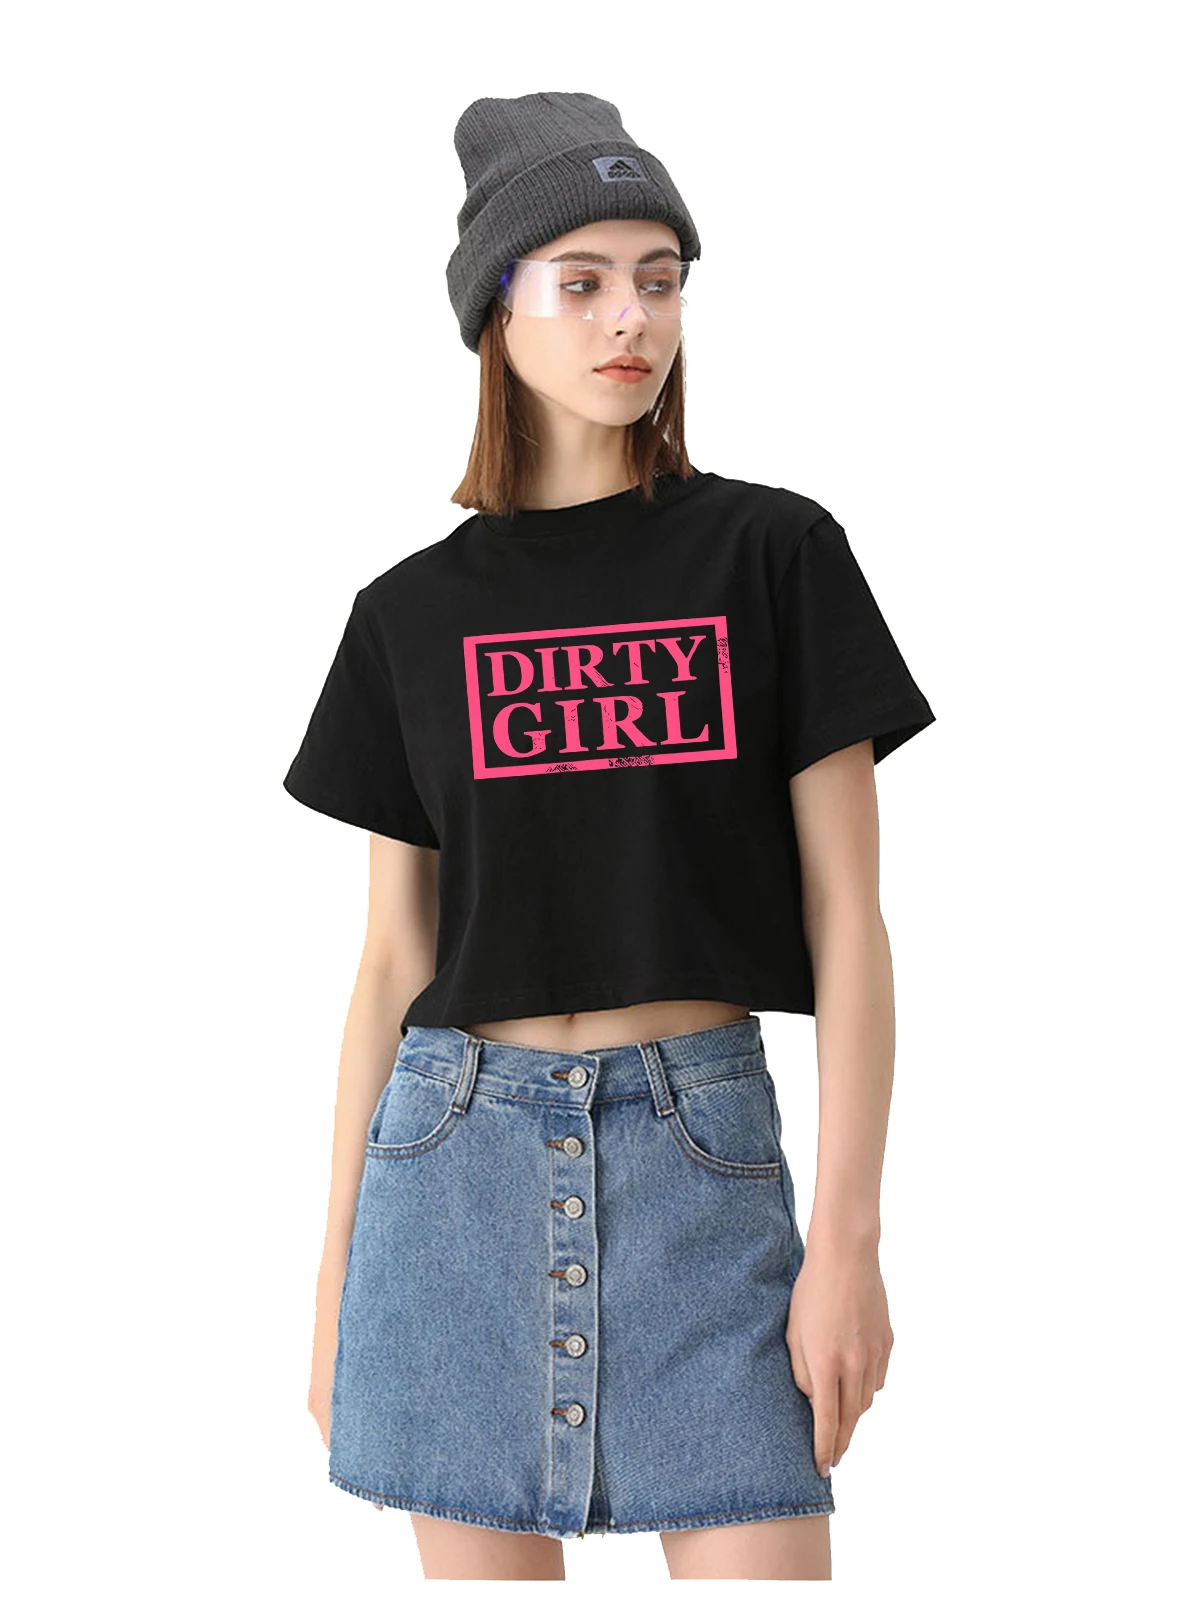 Дизайн Dirty Girl Хлопковая Сексуальная Укороченная Футболка Hotwife С Юмором, Забавный Флирт, Футболка В Стиле Сабмиссив, Свингер, Непослушные Тренировочные Топы